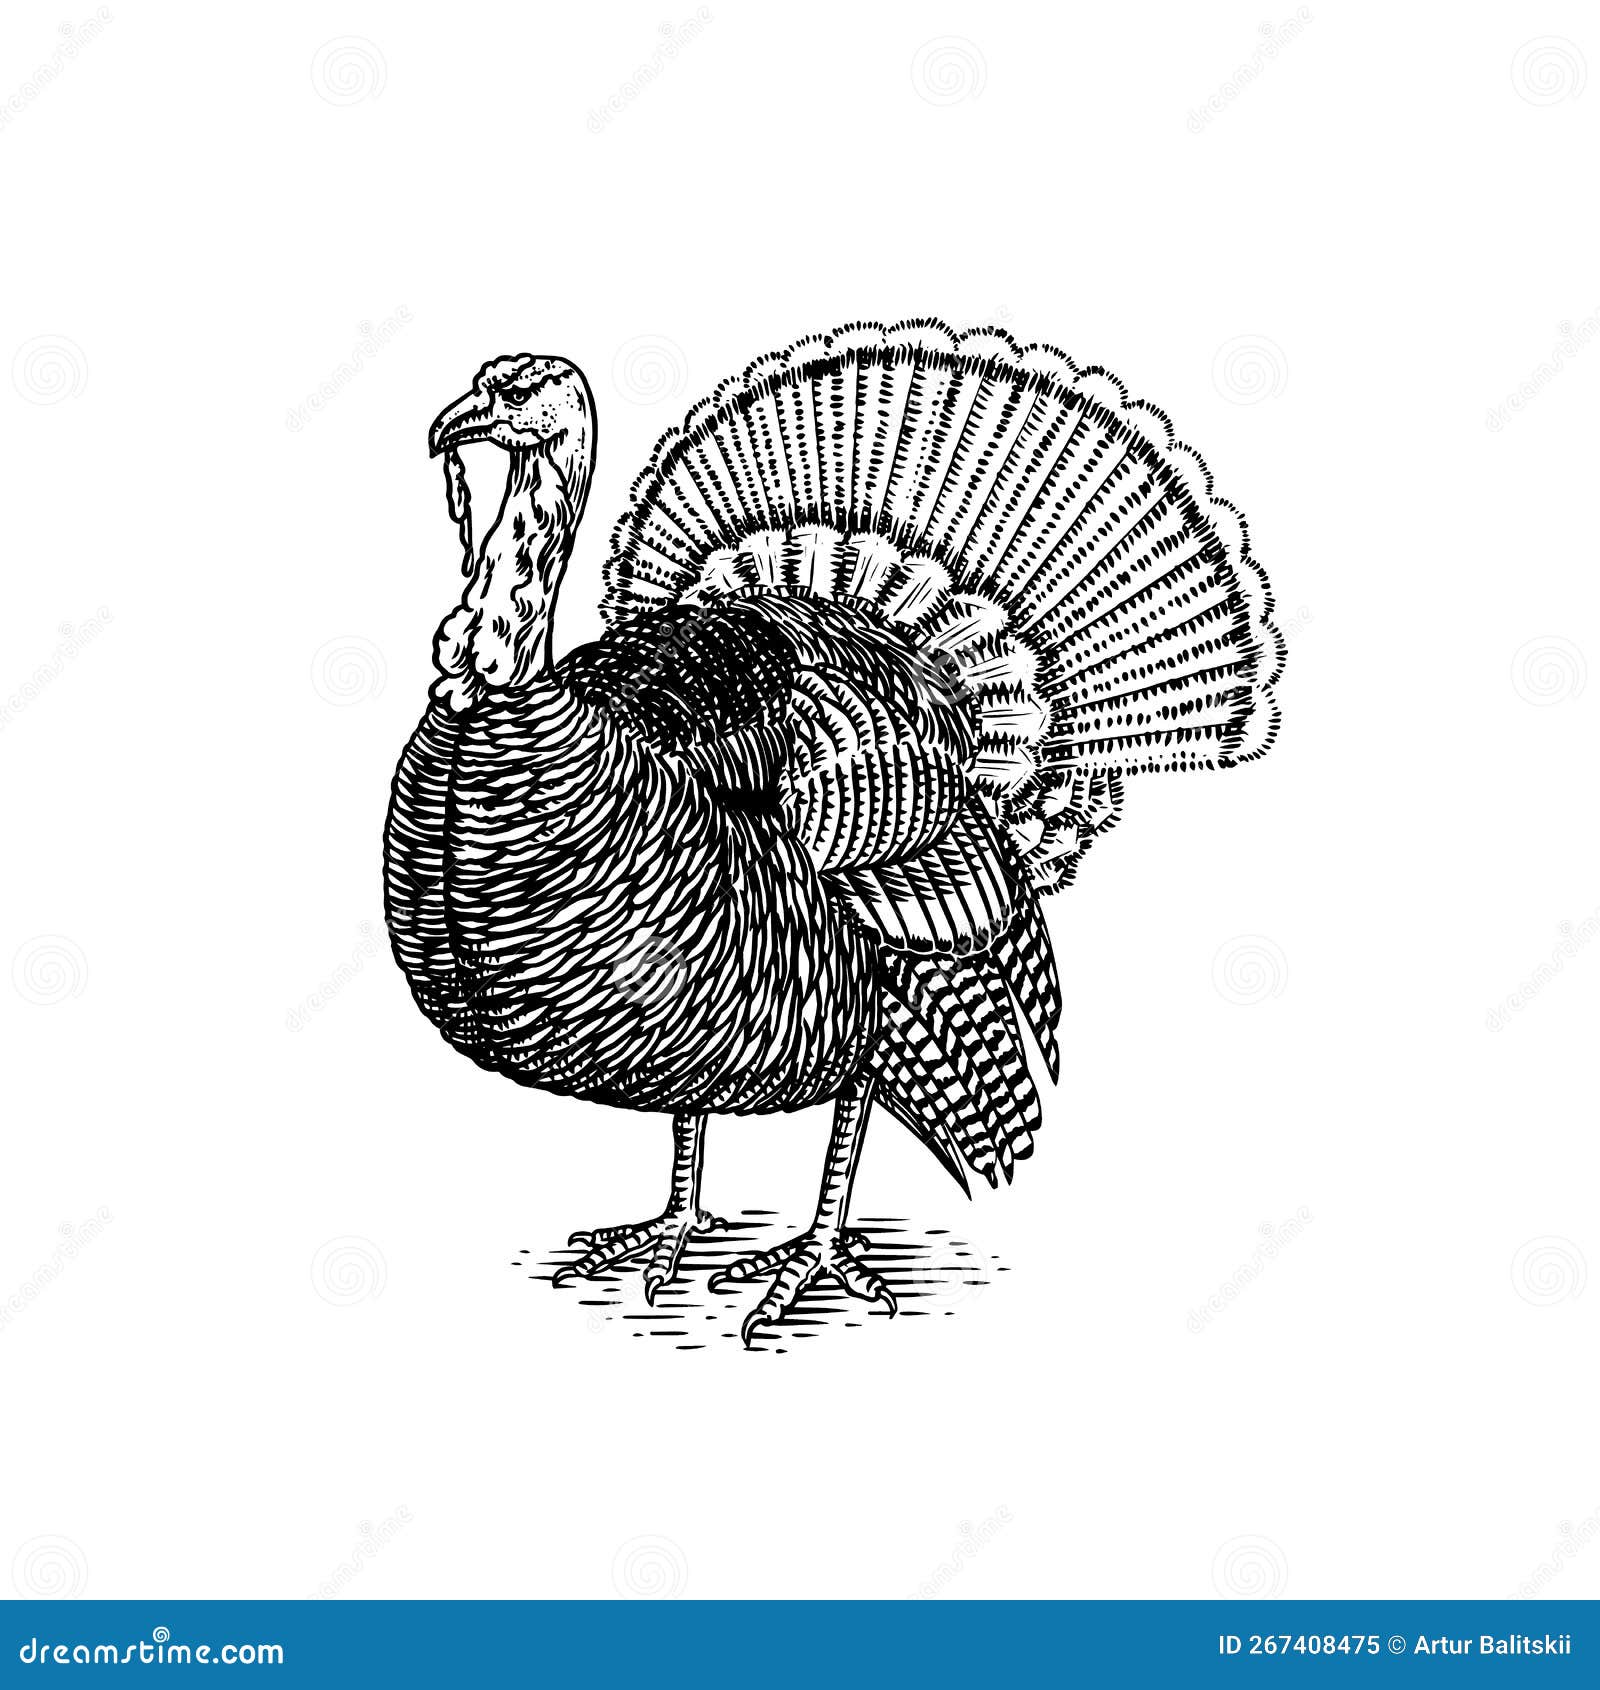 How To Draw A Turkey in 6 Easy Steps  AZ Animals